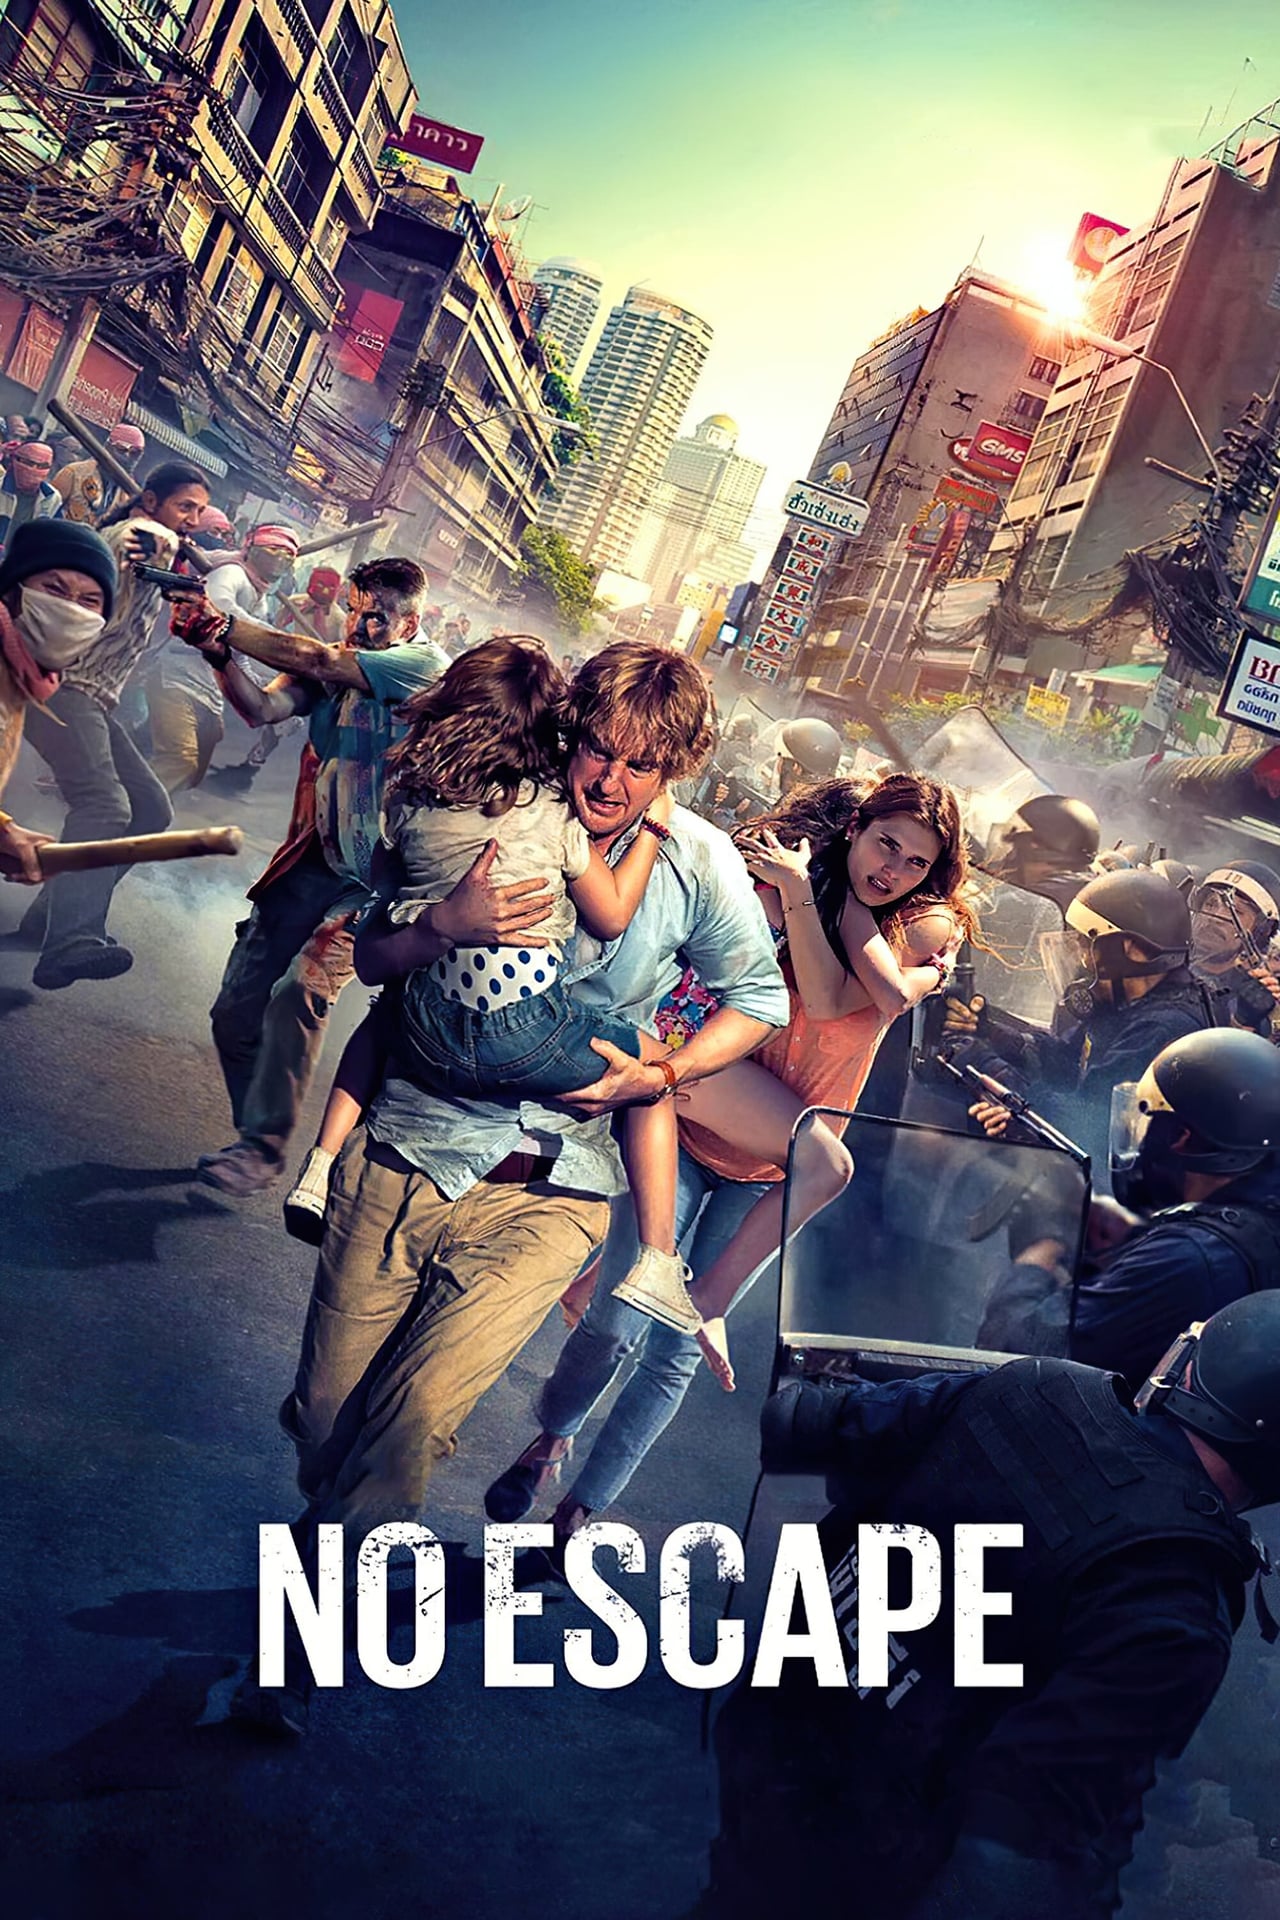 no escape 2003 movie review